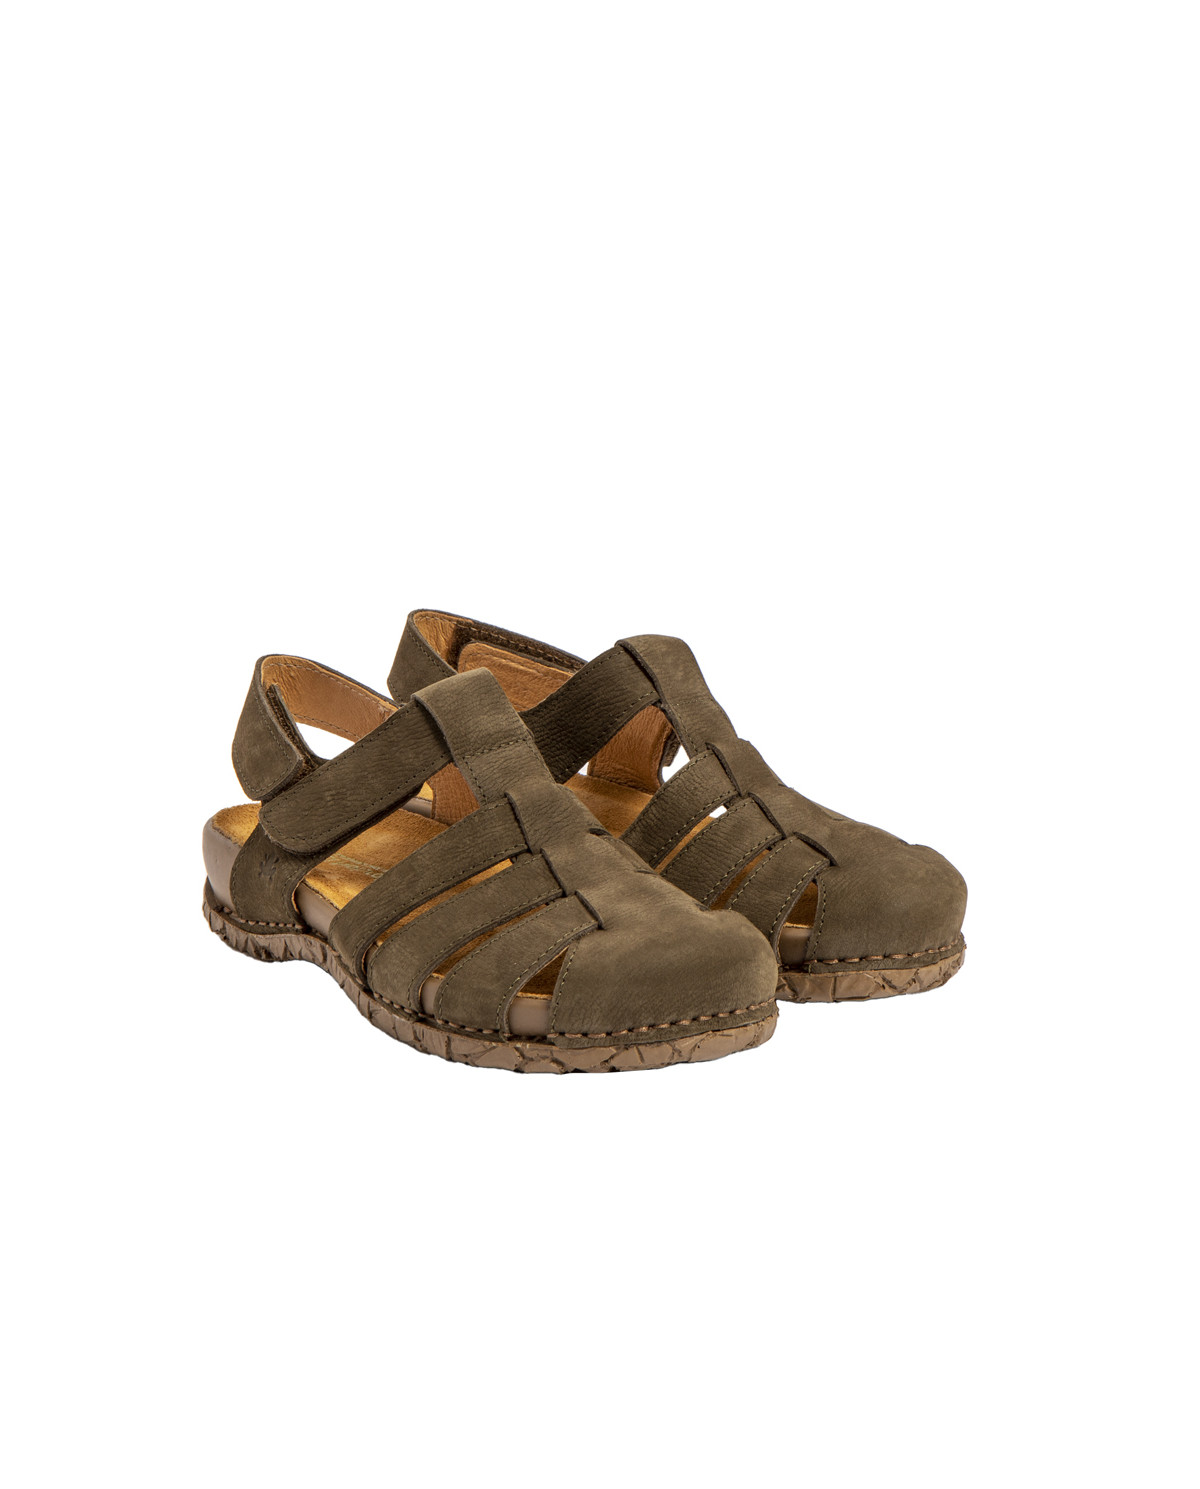 Sandales confortables plates en cuir bout fermé à bride cheville - Vert - El naturalista